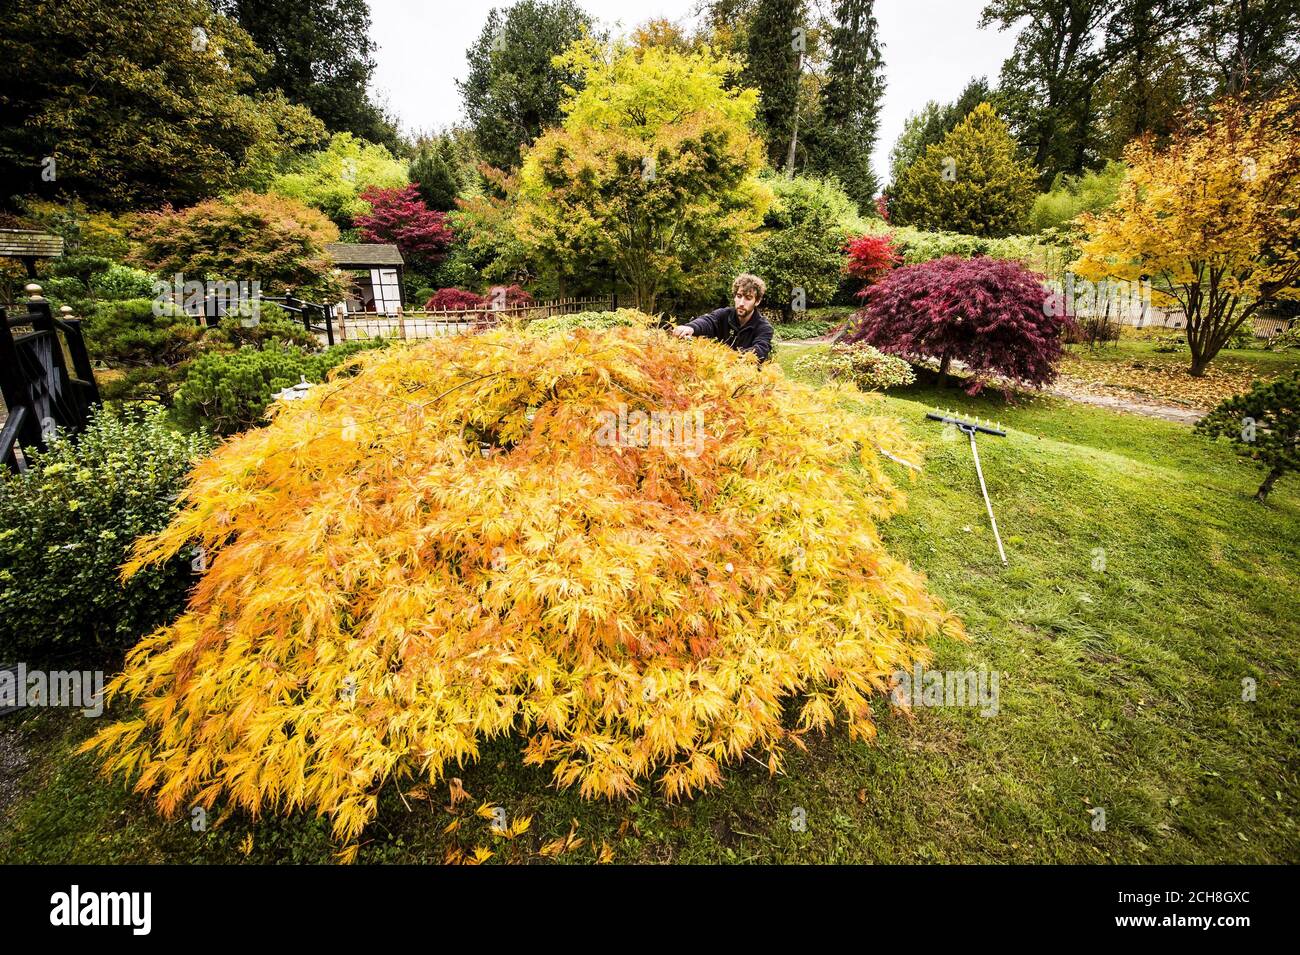 Gardner Ed Edge poda un árbol japonés Acer en los Jardines de té en la confianza Nacional Kingston Lacy casa jardines, donde los largos días de sol brillante durante todo octubre han resultado en el cambio de hoja y el color creando una espectacular muestra de otoño. Foto de stock